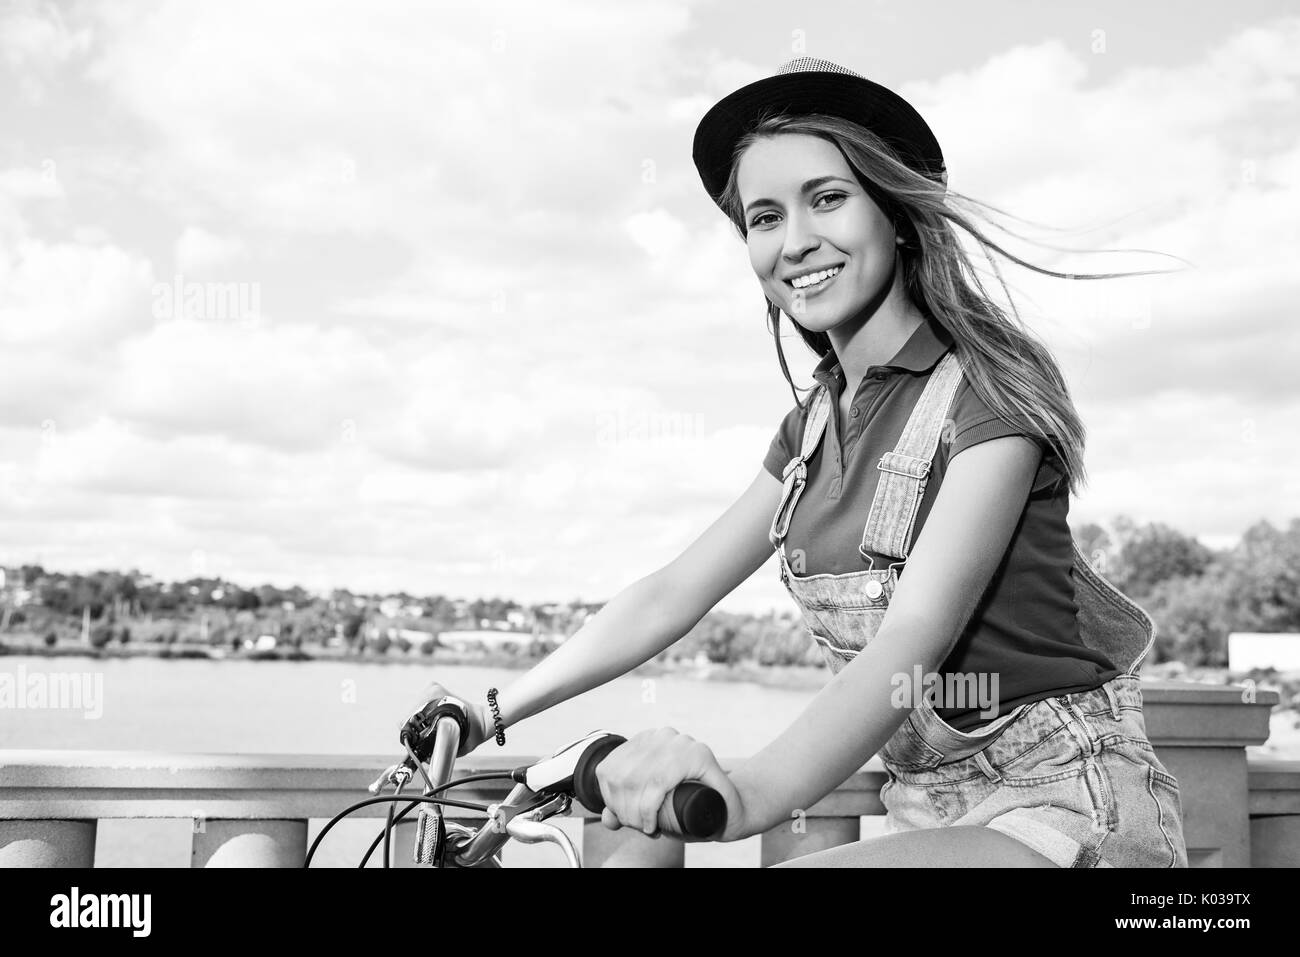 Hermosa mujer joven con su bicicleta en el parque Foto de stock